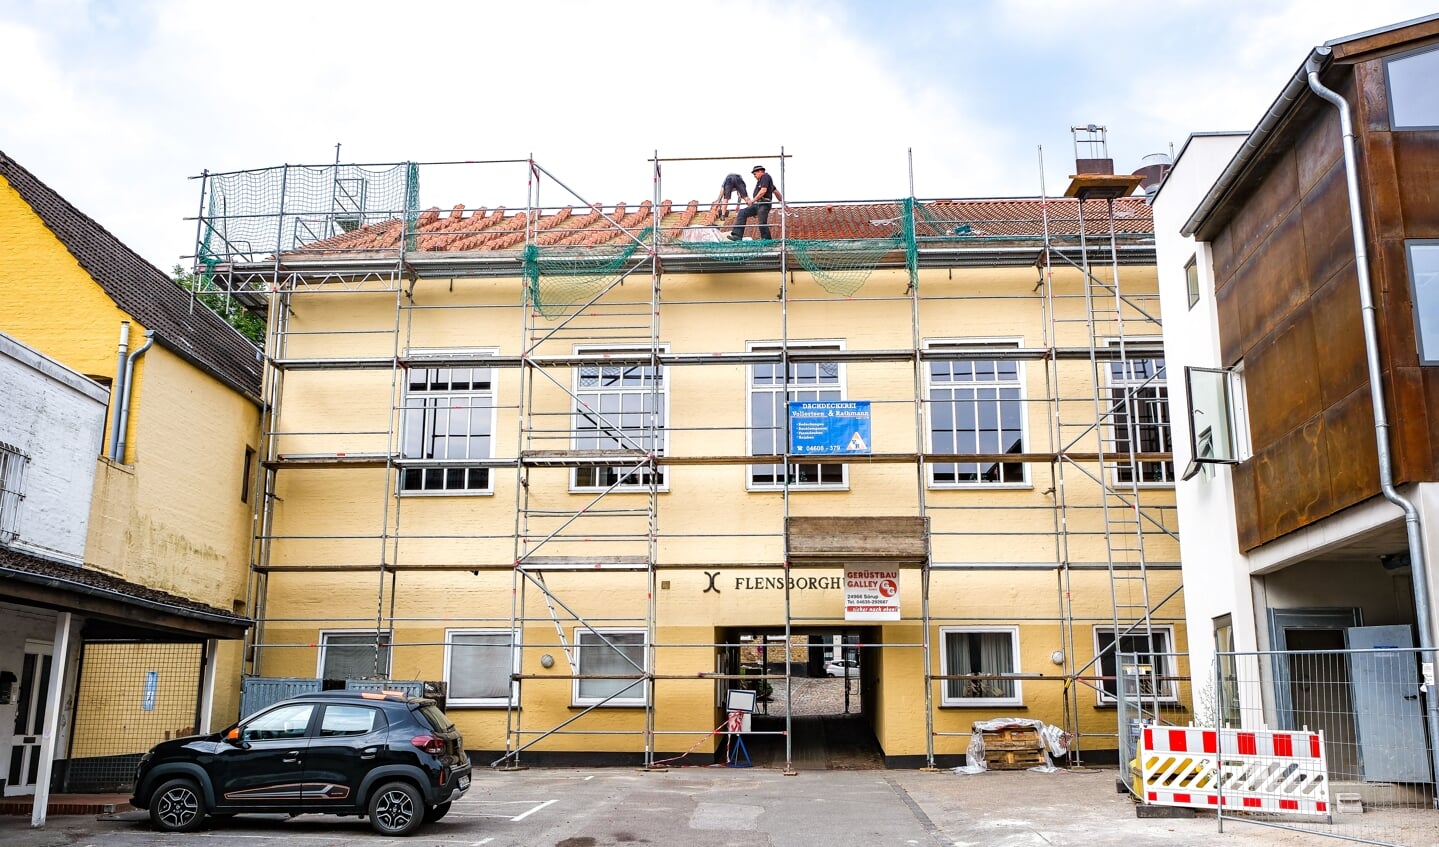 Snart er 450 kvadratmeter tag over den store sal ved Flensborghus skiftet ud. Arbejdet forventes færdigt i denne uge.